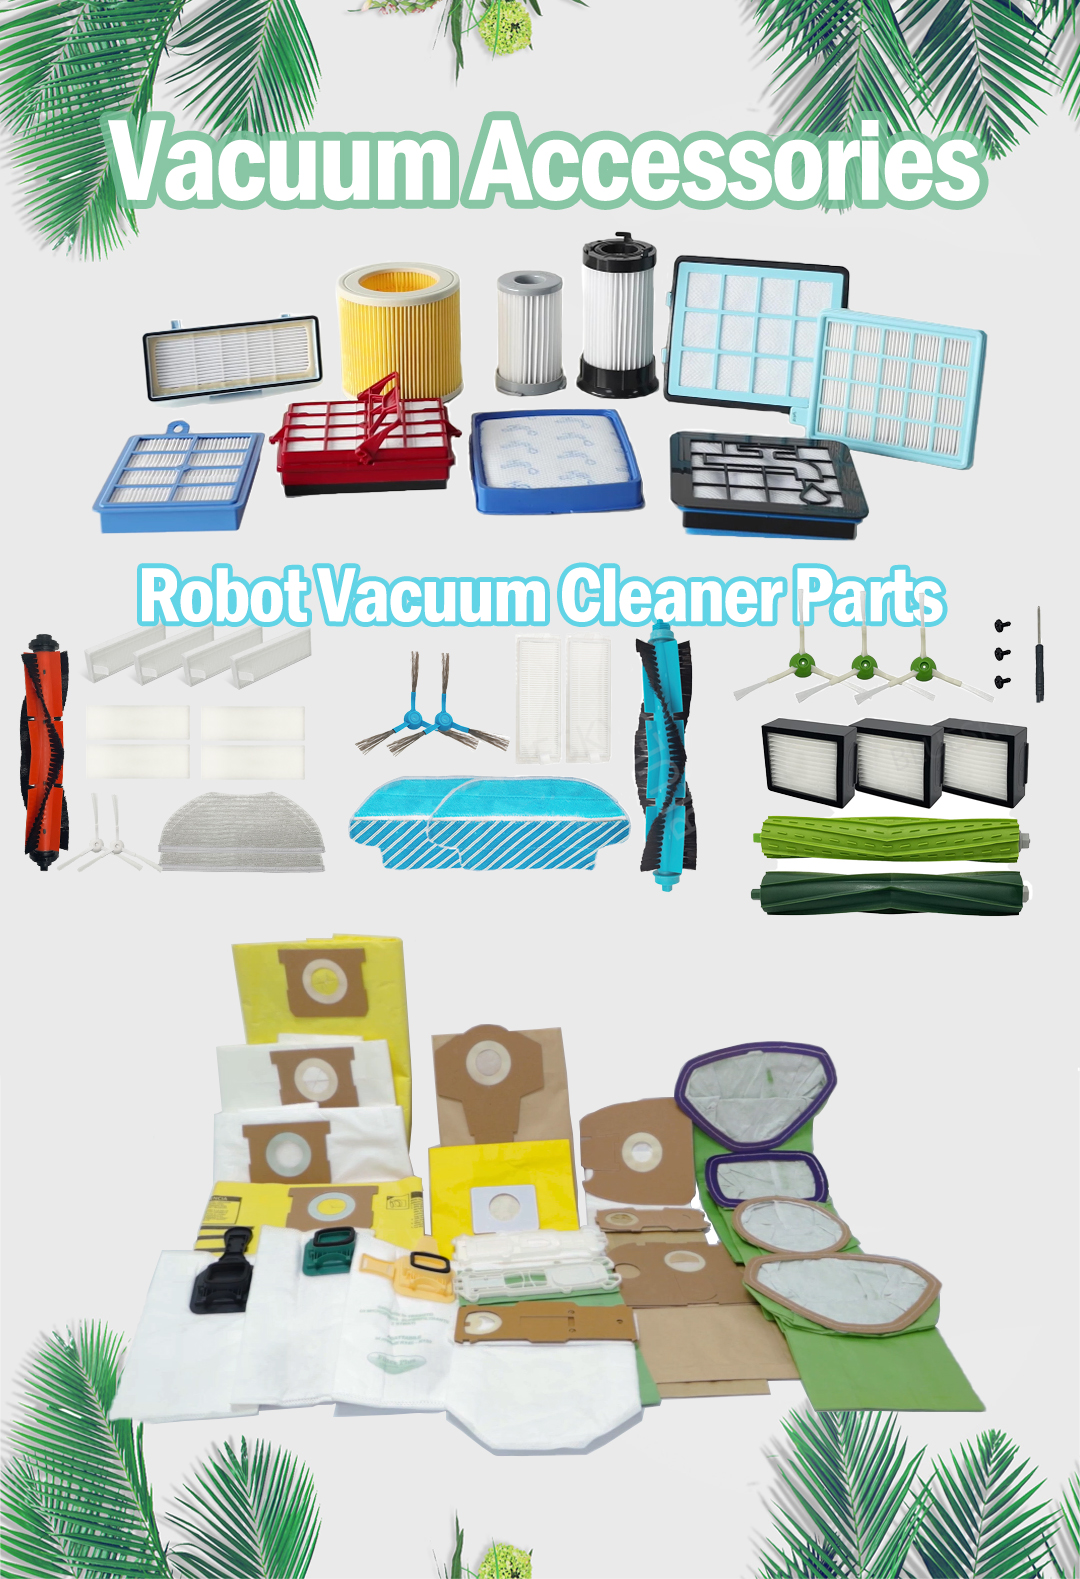 家事の負担を軽減するには、掃除機かロボット掃除機を選びますか?